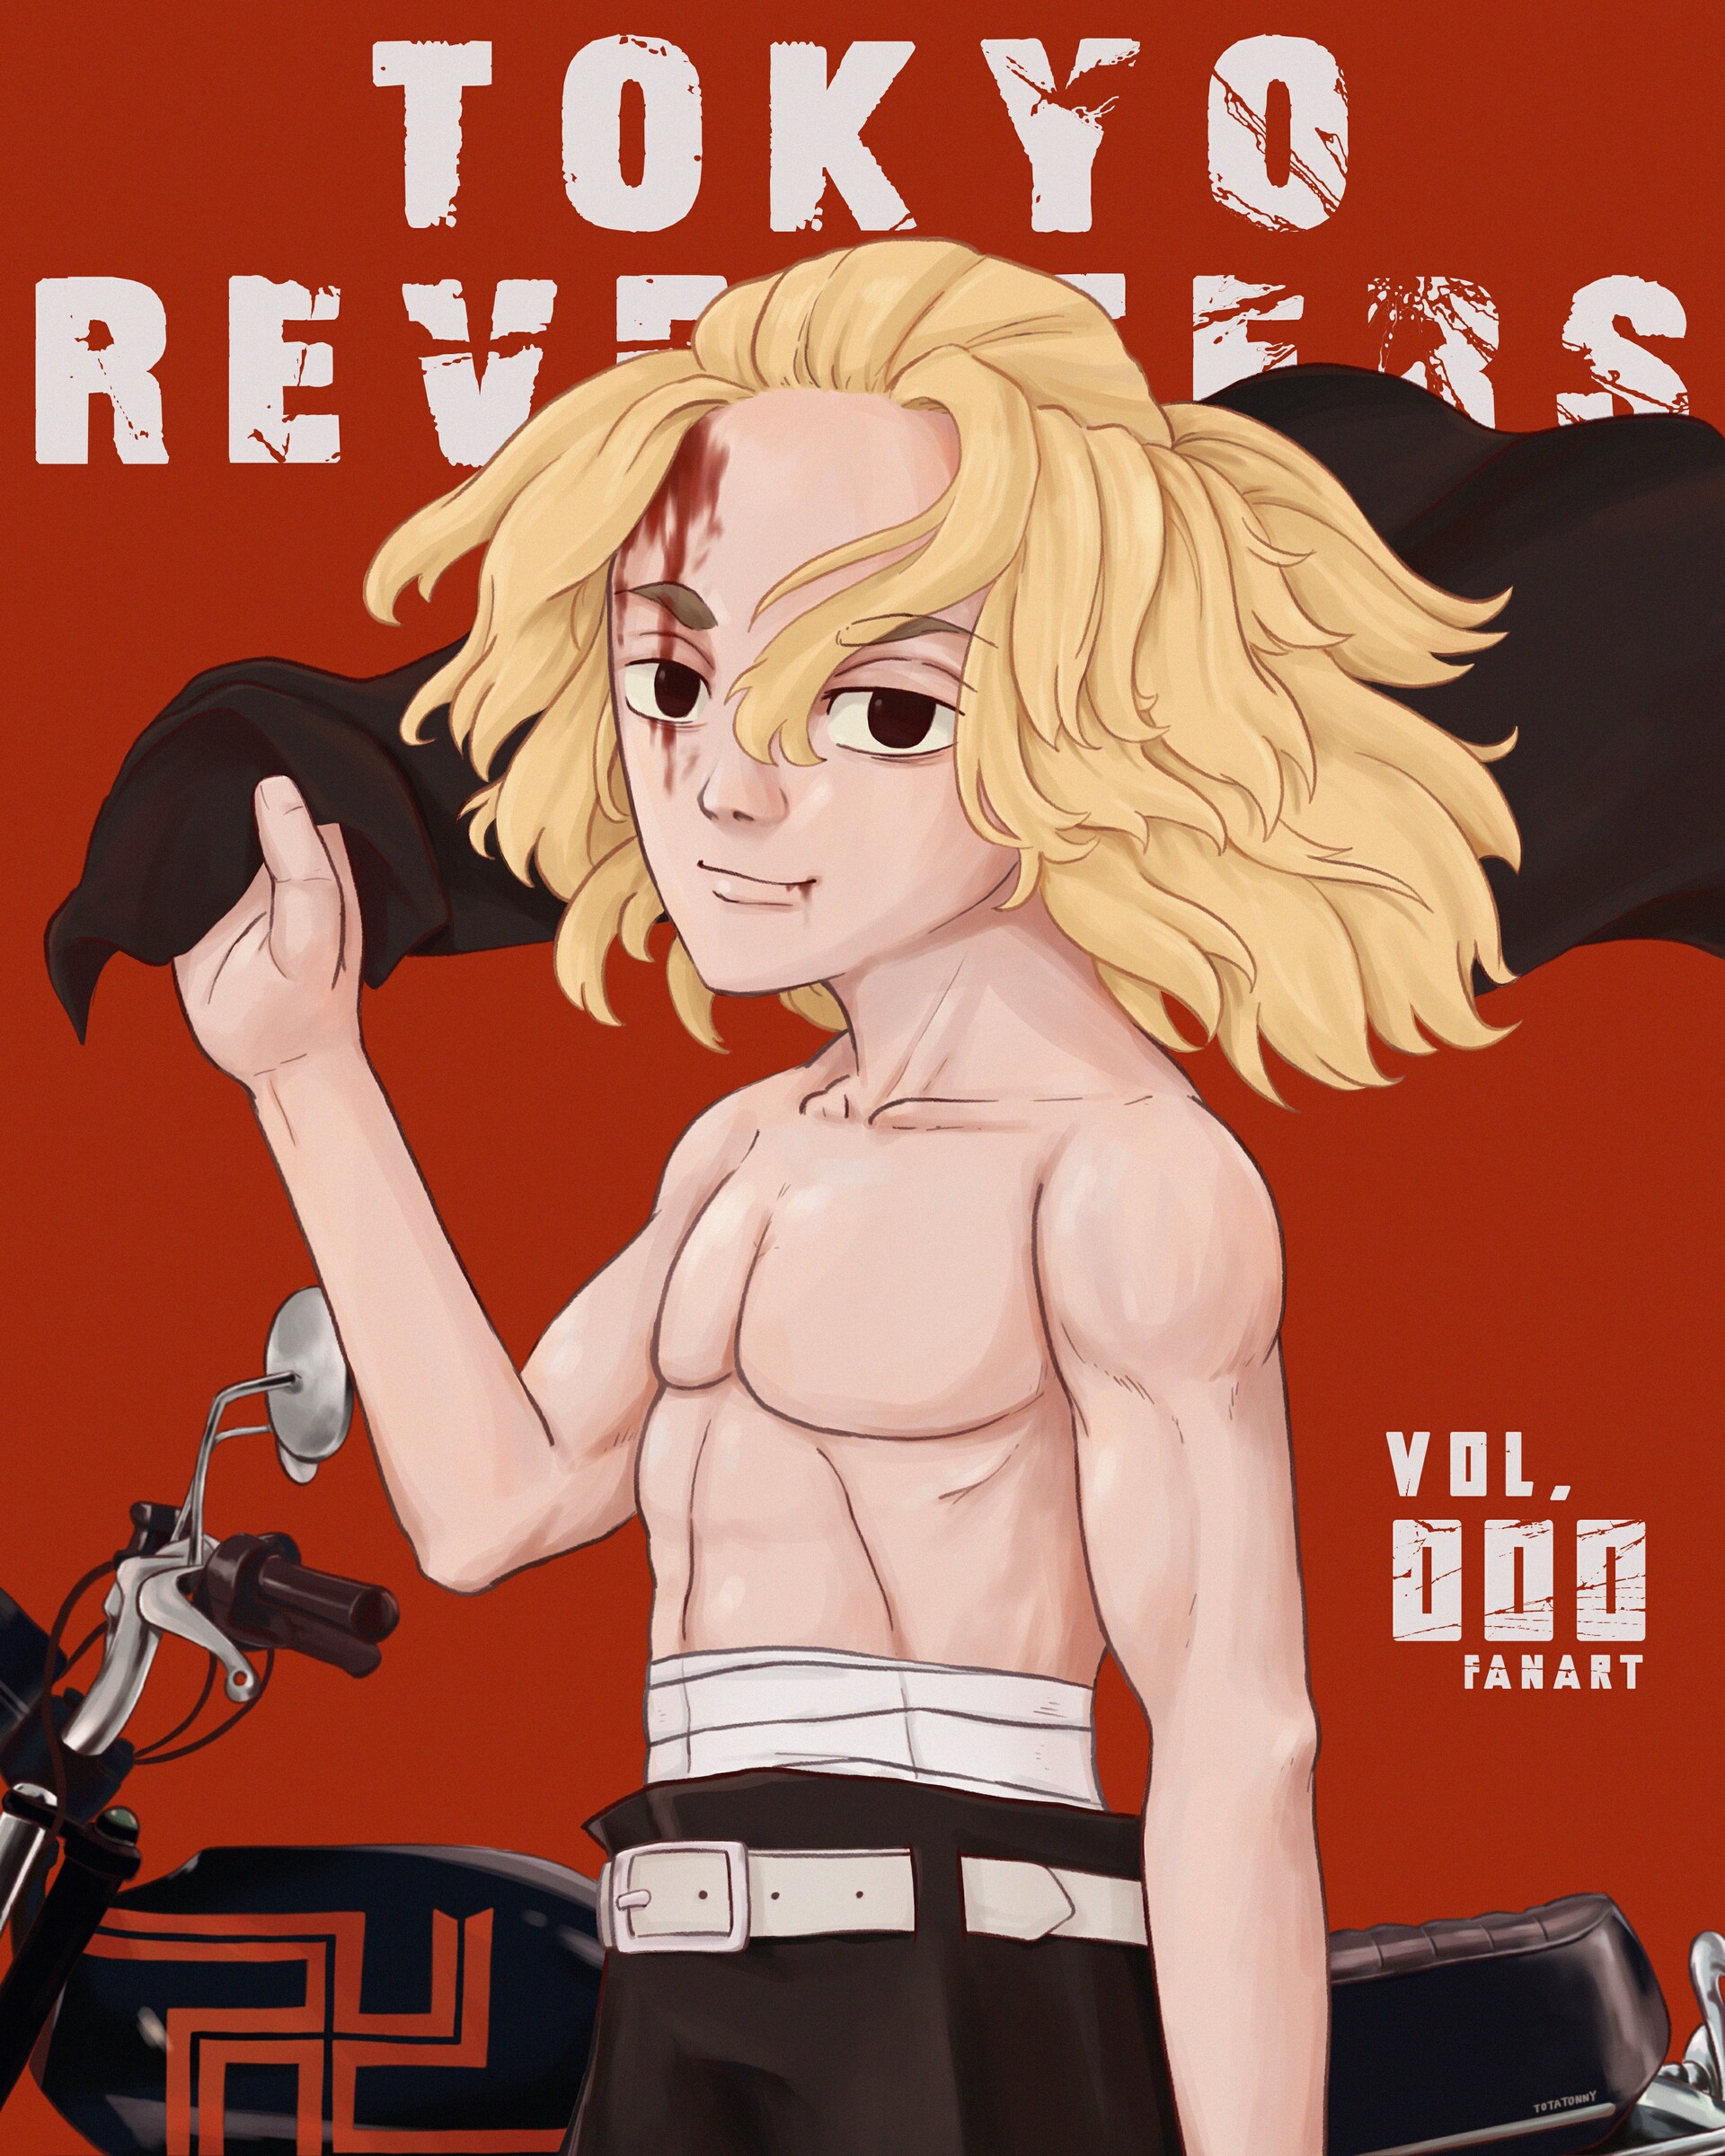 ArtStation - Fan art dedicated to the anime Tokyo Revengers